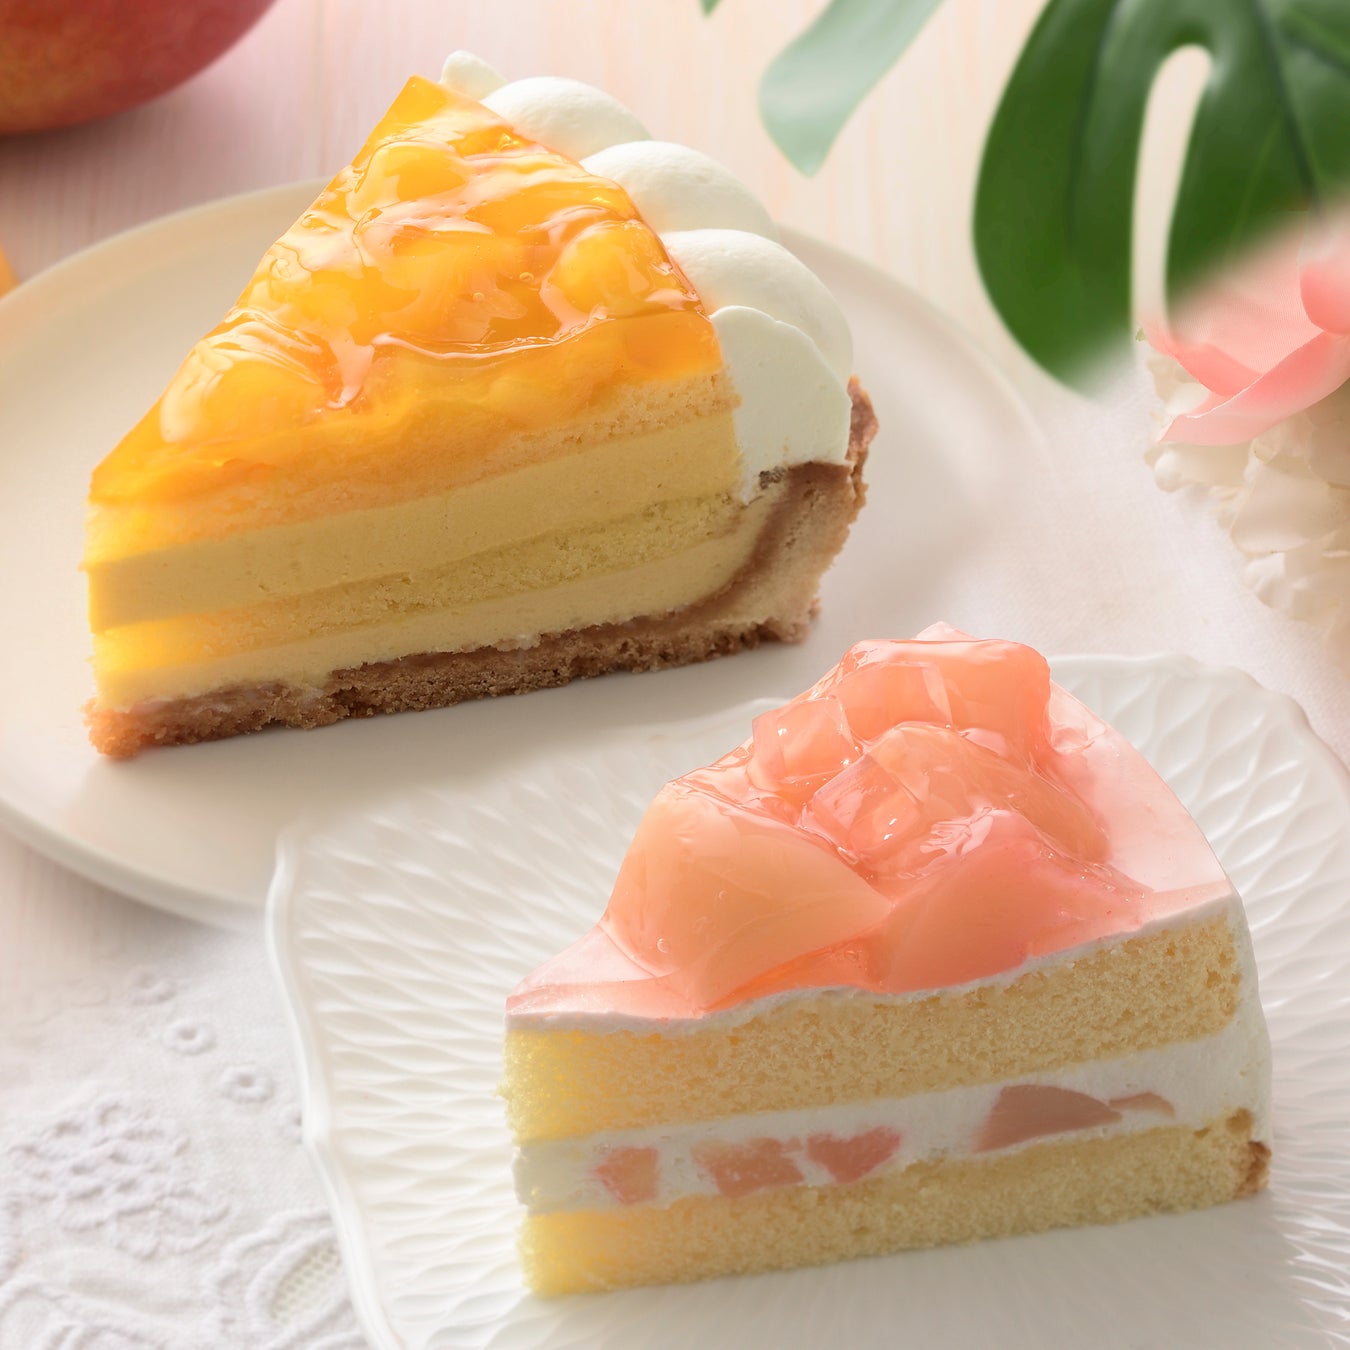 【銀座コージーコーナー】濃厚な甘さのマンゴー、上品な甘さと香りの白桃。とろける食感の２大フルーツをショートケーキやタルトで味わう♪